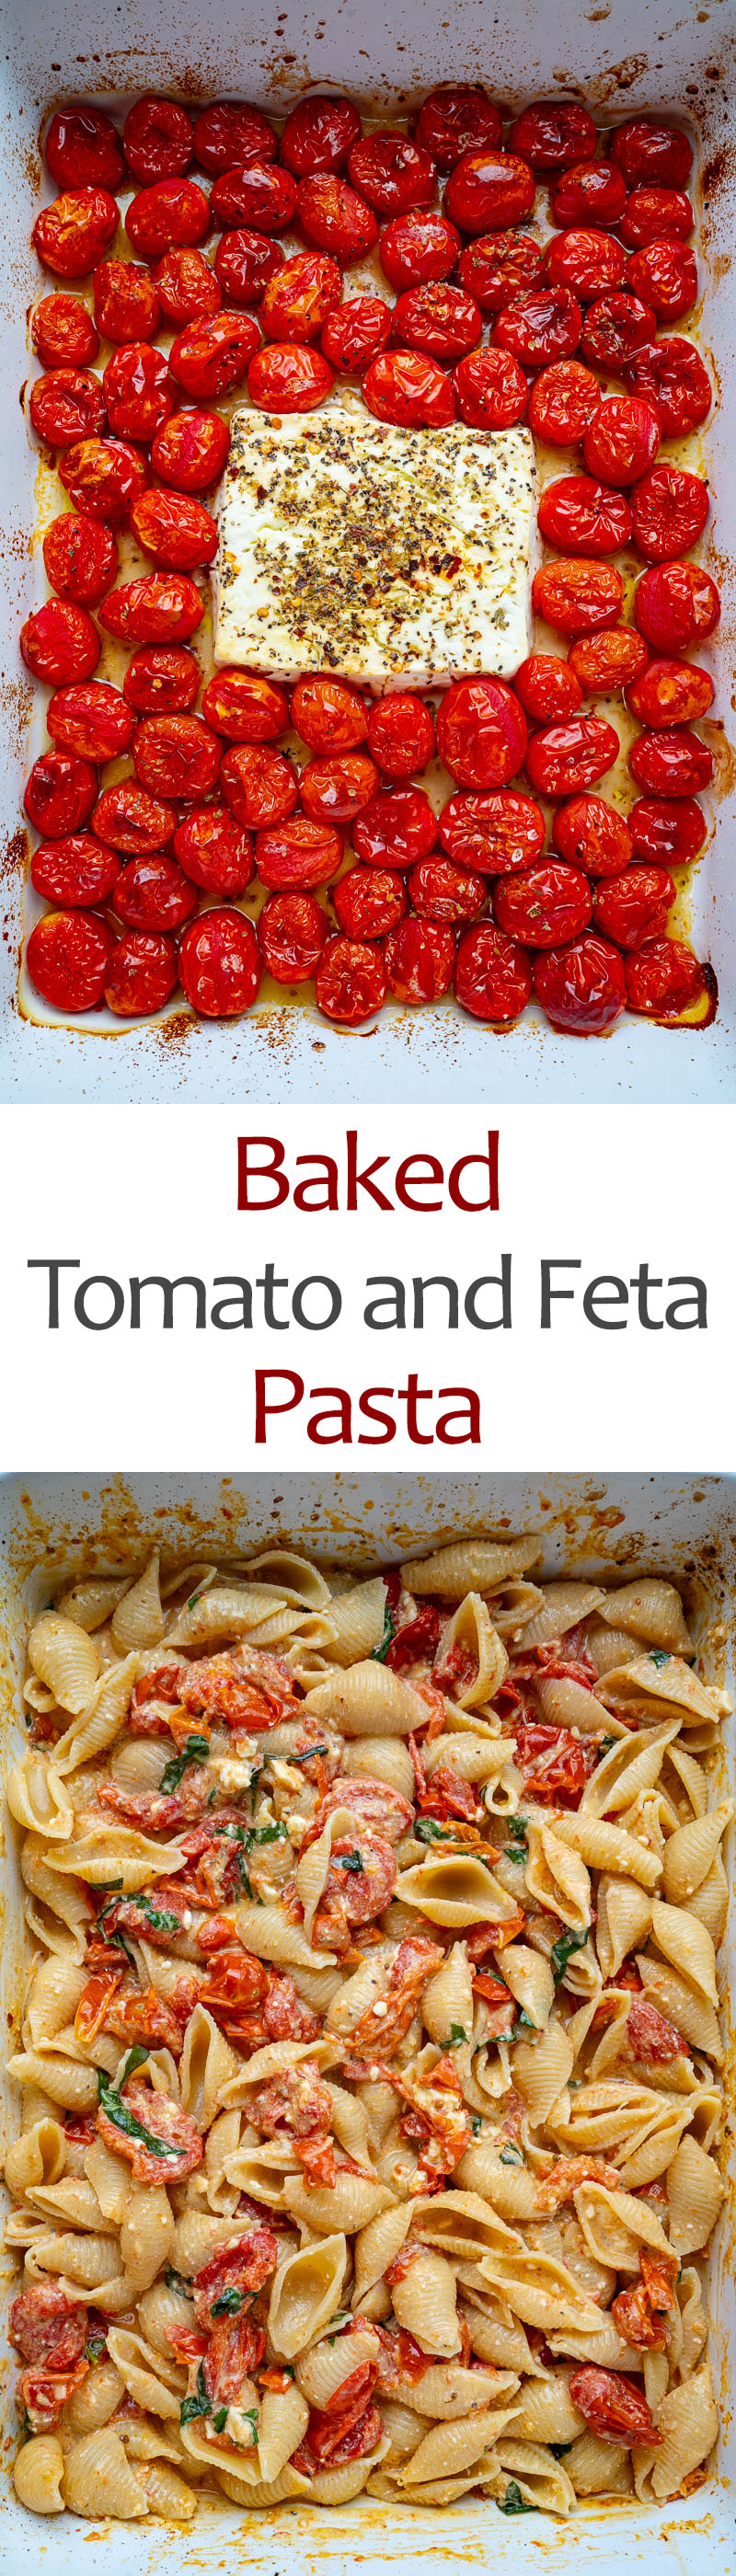 Baked Tomato and Feta Pasta